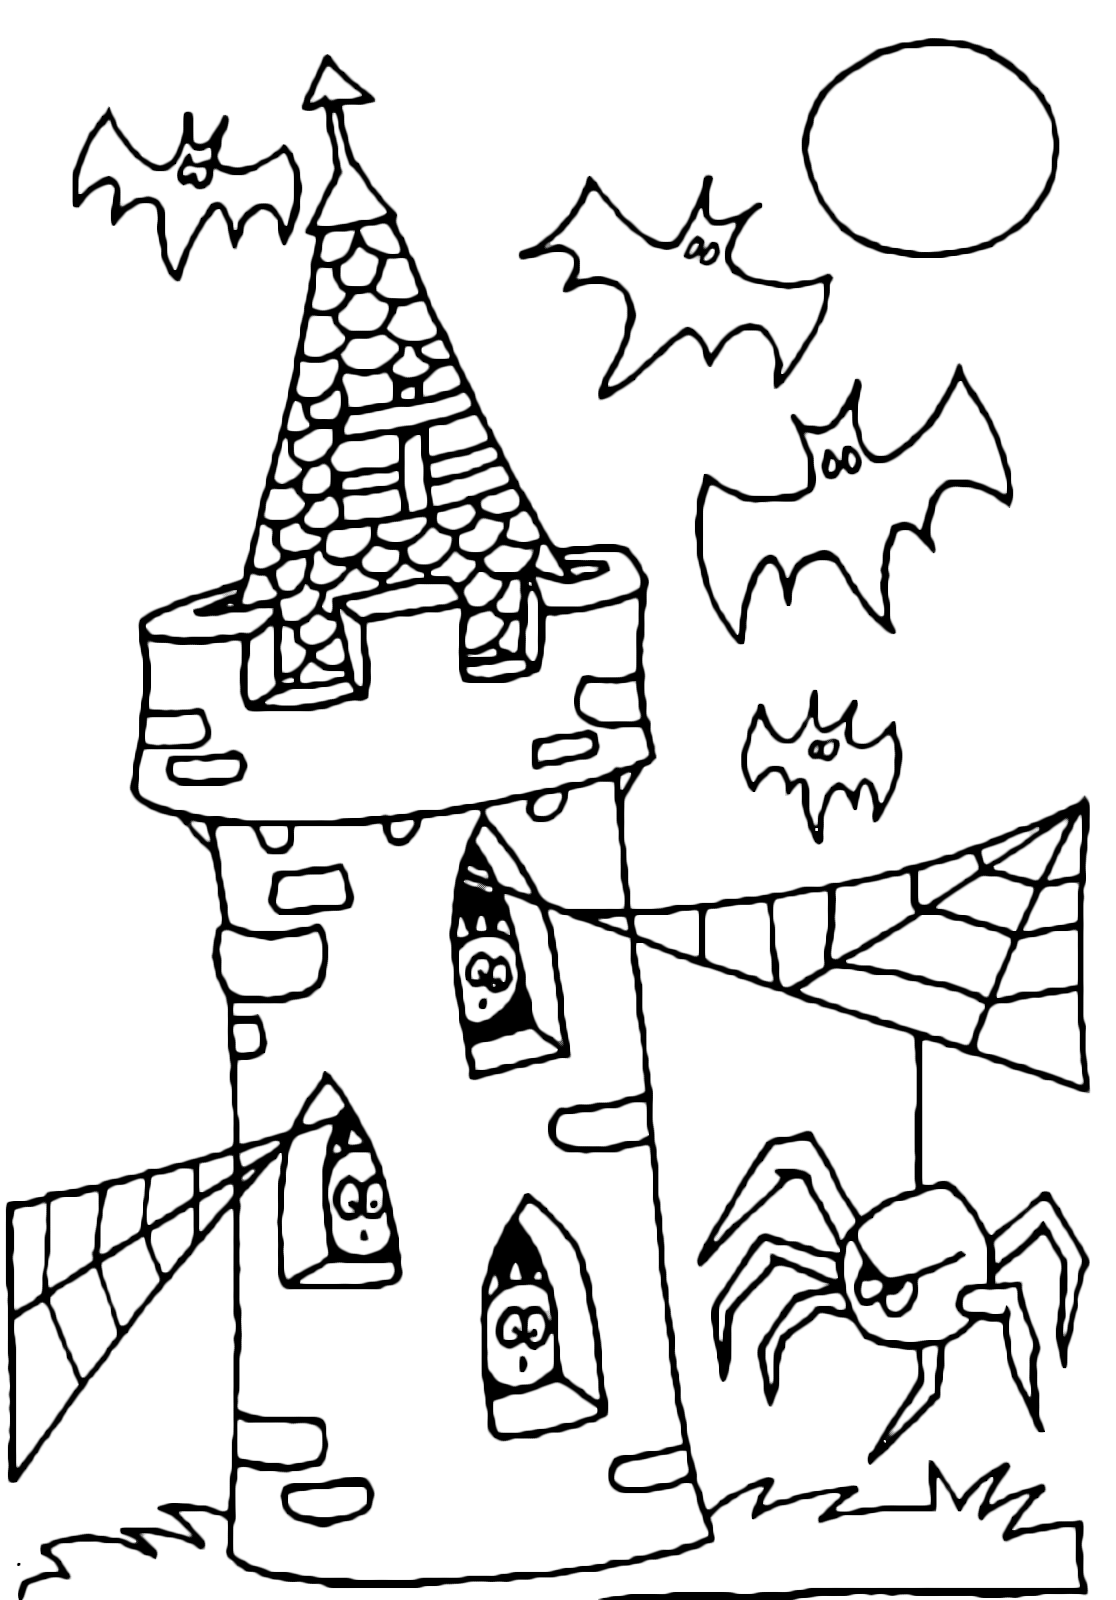 Halloween - I pipistrelli attaccano i ragni sulla torre